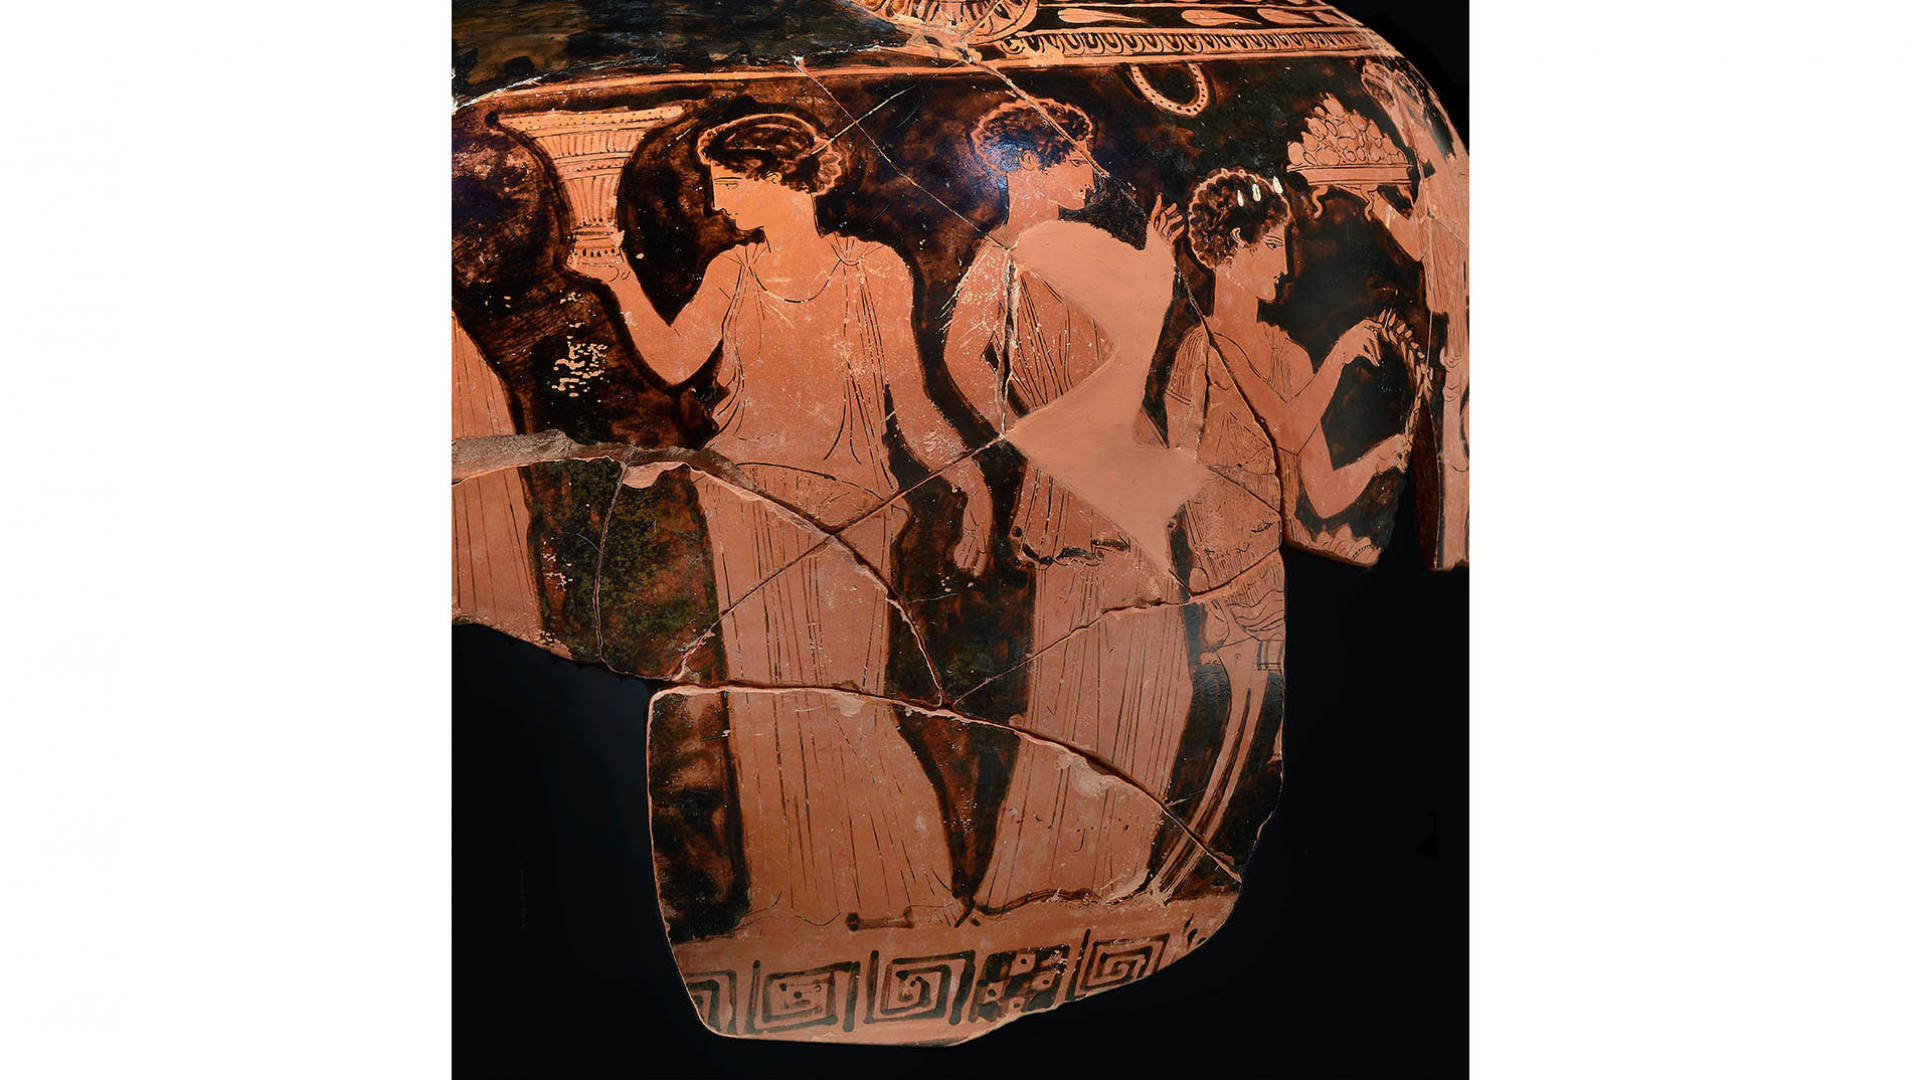 Details on a Greek vase